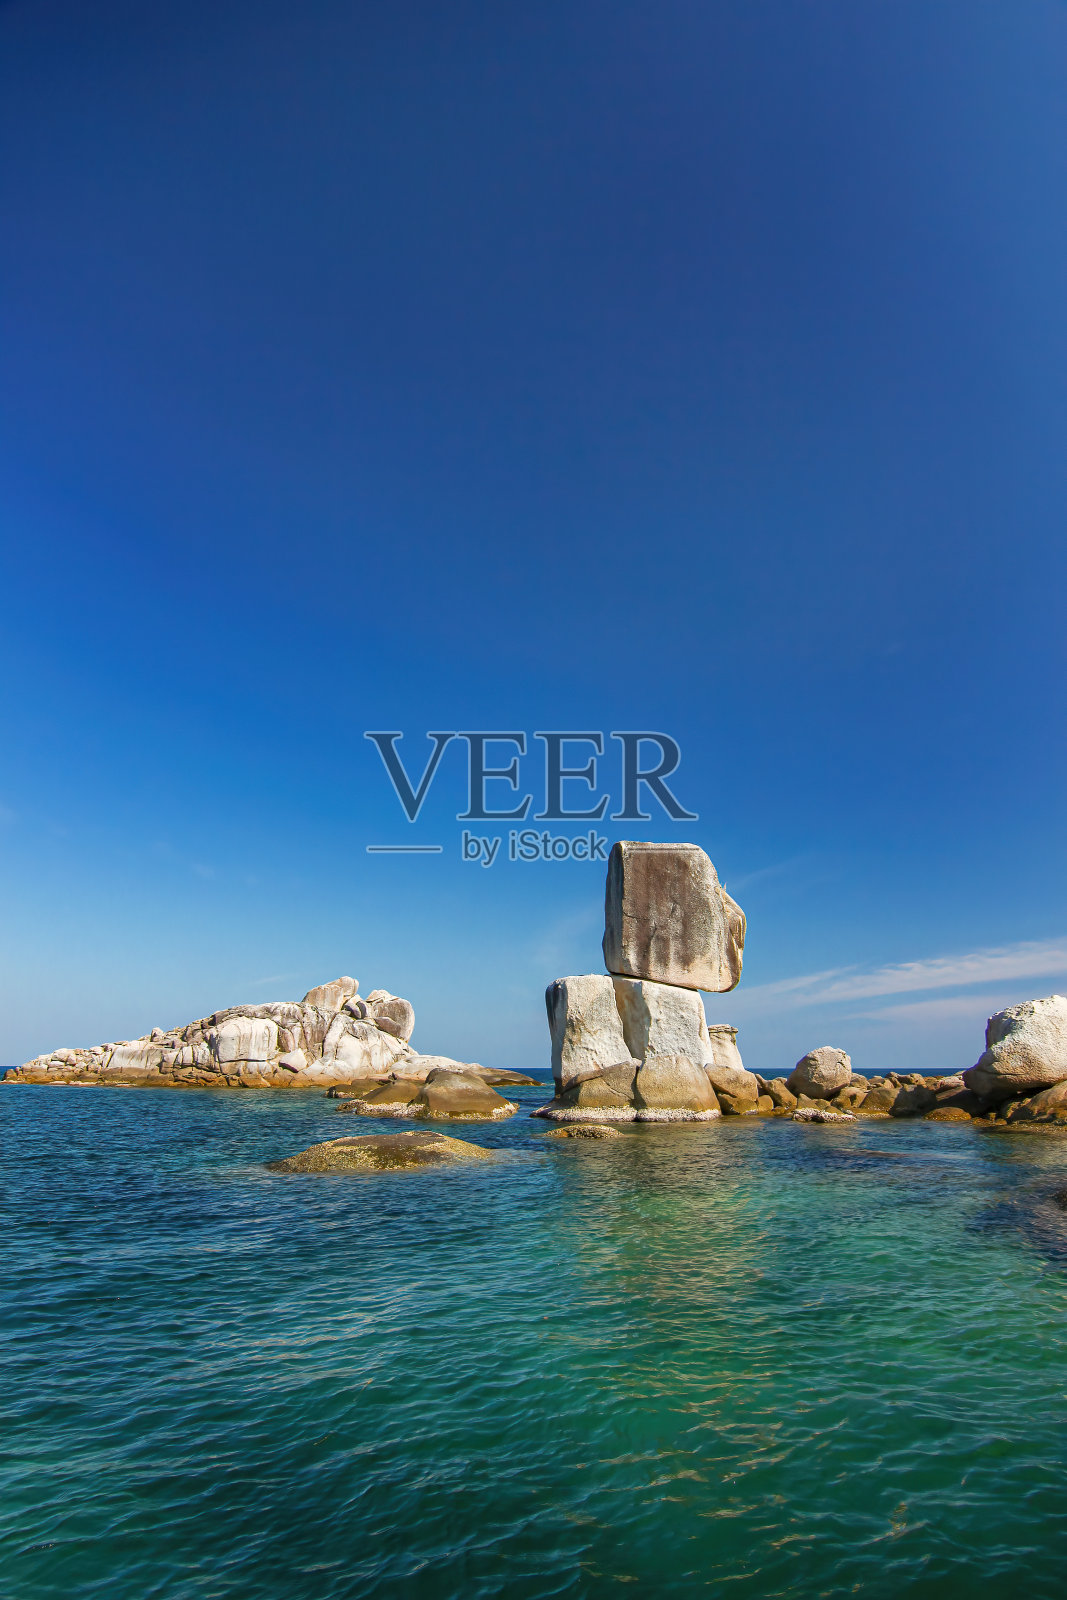 泰国旅游岛利贝岛巨石阵叠嶂于远海海中与巨大的大石交叠和阳光明媚清澈的蓝天背景景观照片摄影图片